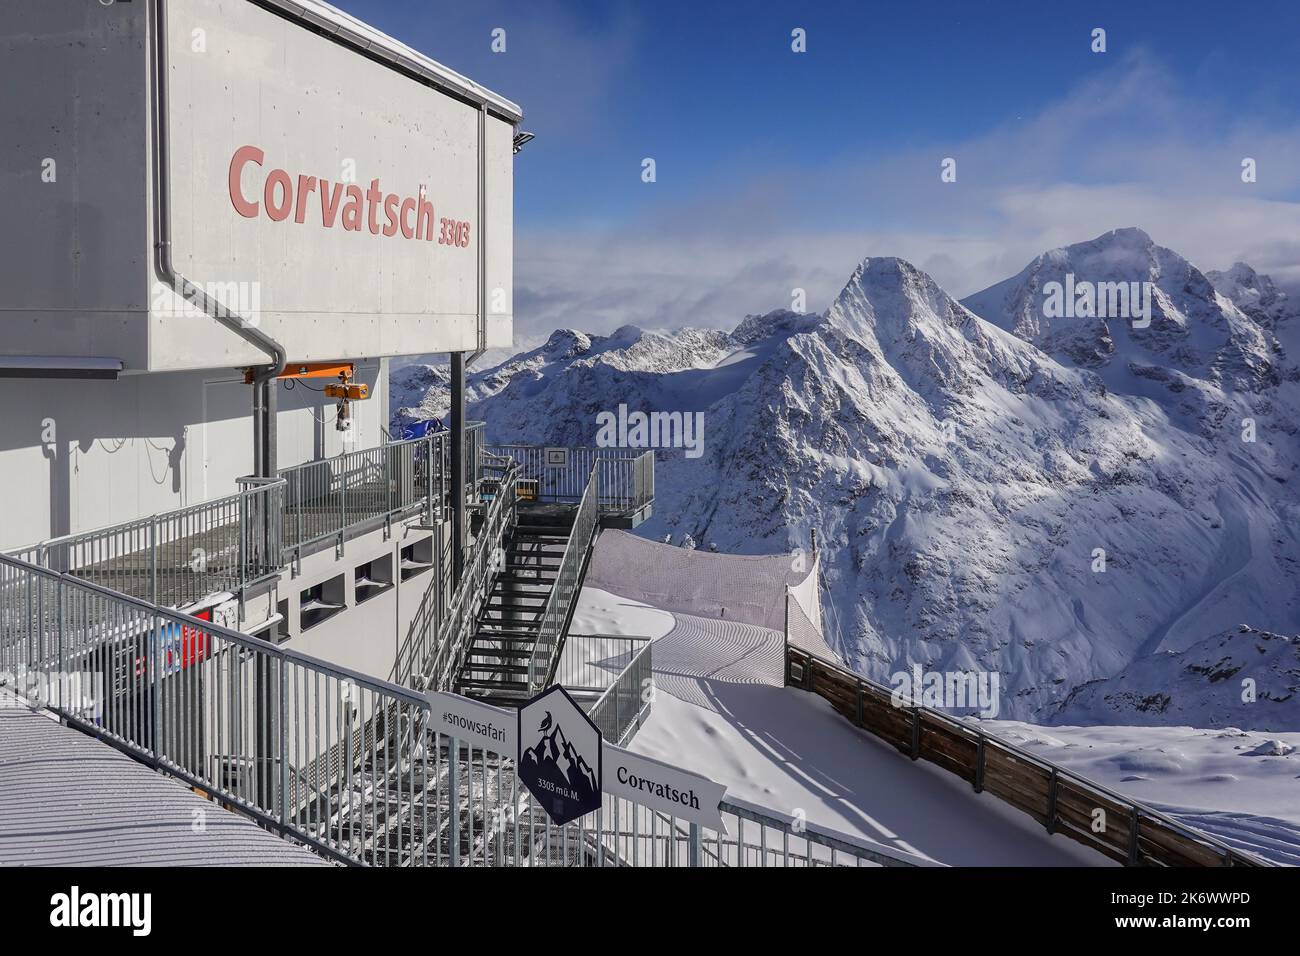 Corvatsch, Suisse - 05 décembre 2021: Vue sur la station de téléphérique de Corvatsch qui se trouve au 3303m dans les alpes suisses, dans le canton de Graubunden Banque D'Images